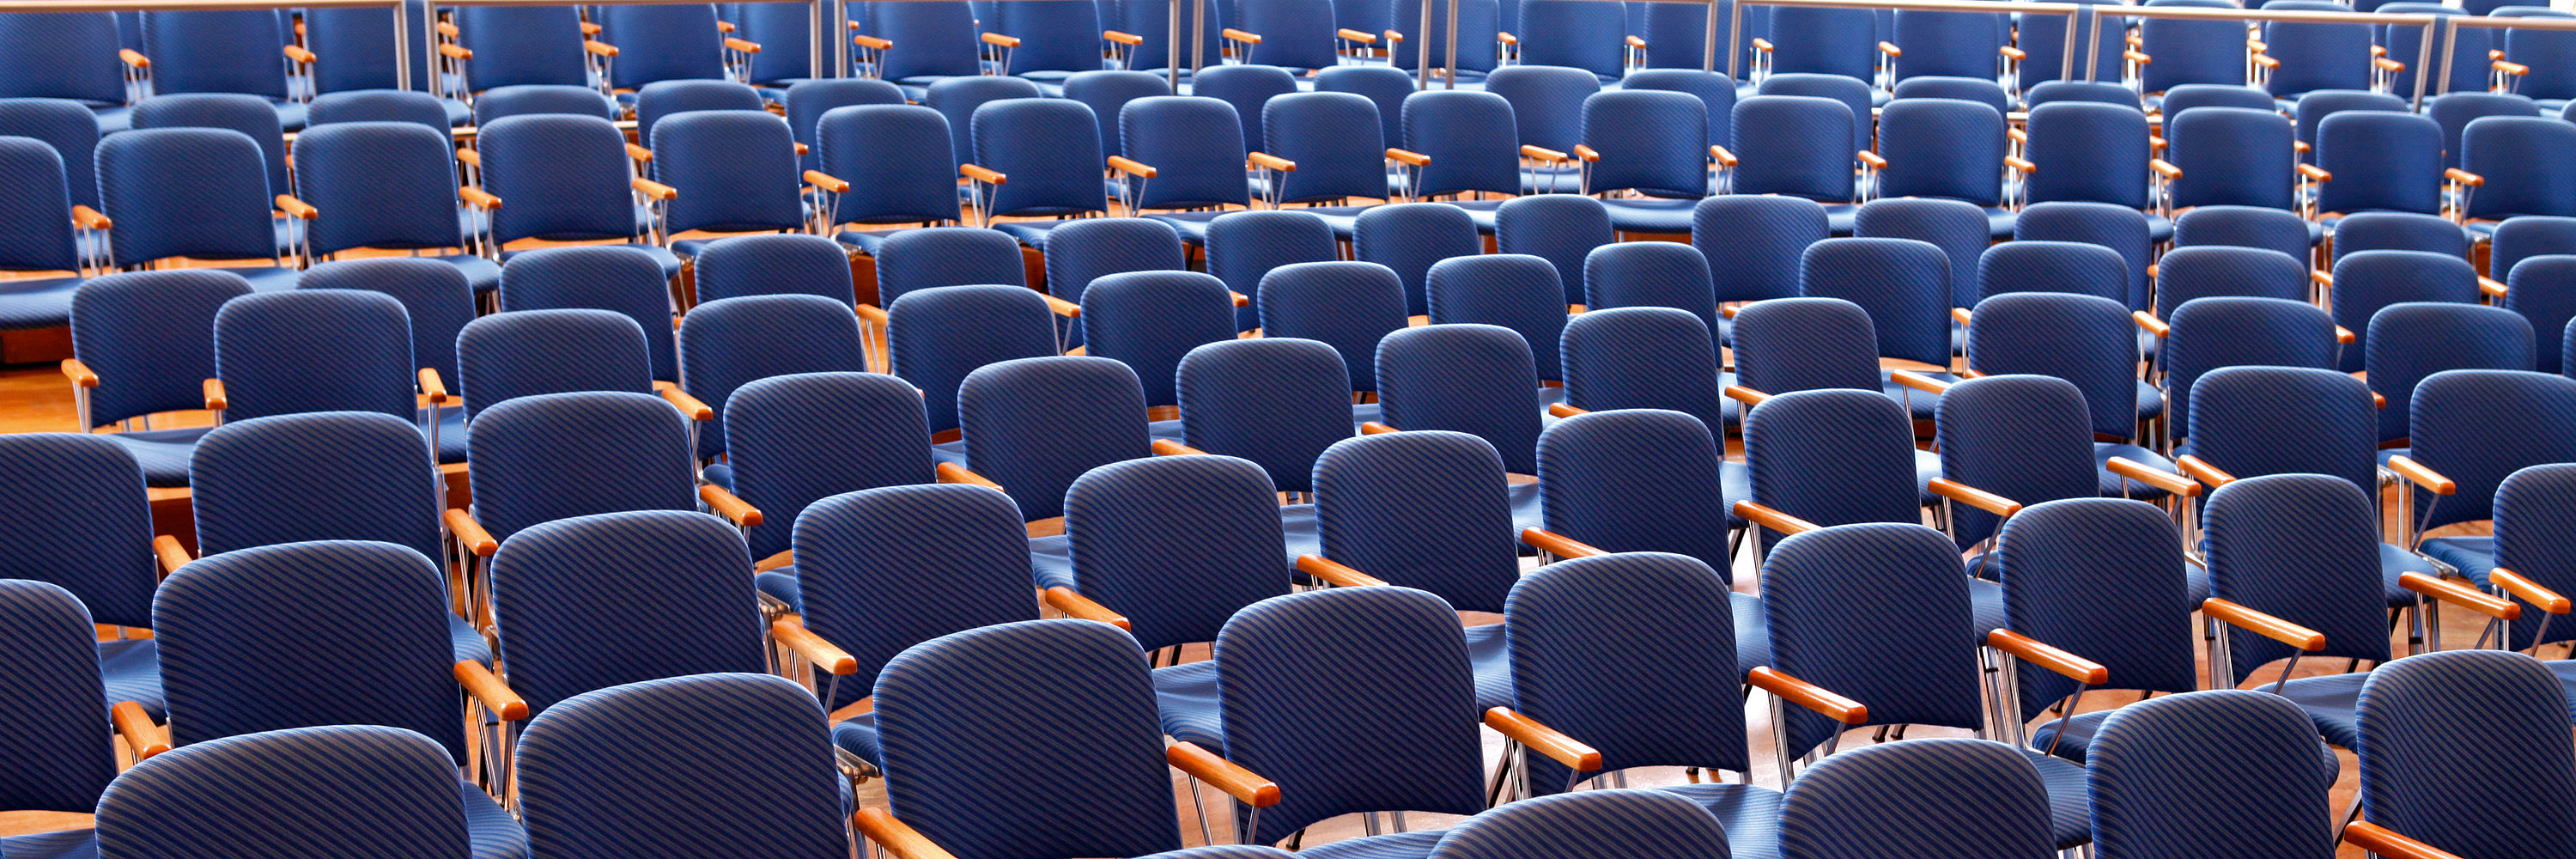 Unser Foto zeigt dunkelblaue Stühle in Reihe angeordnet. Foto: Contrast Marketing für die Stadt Günzburg